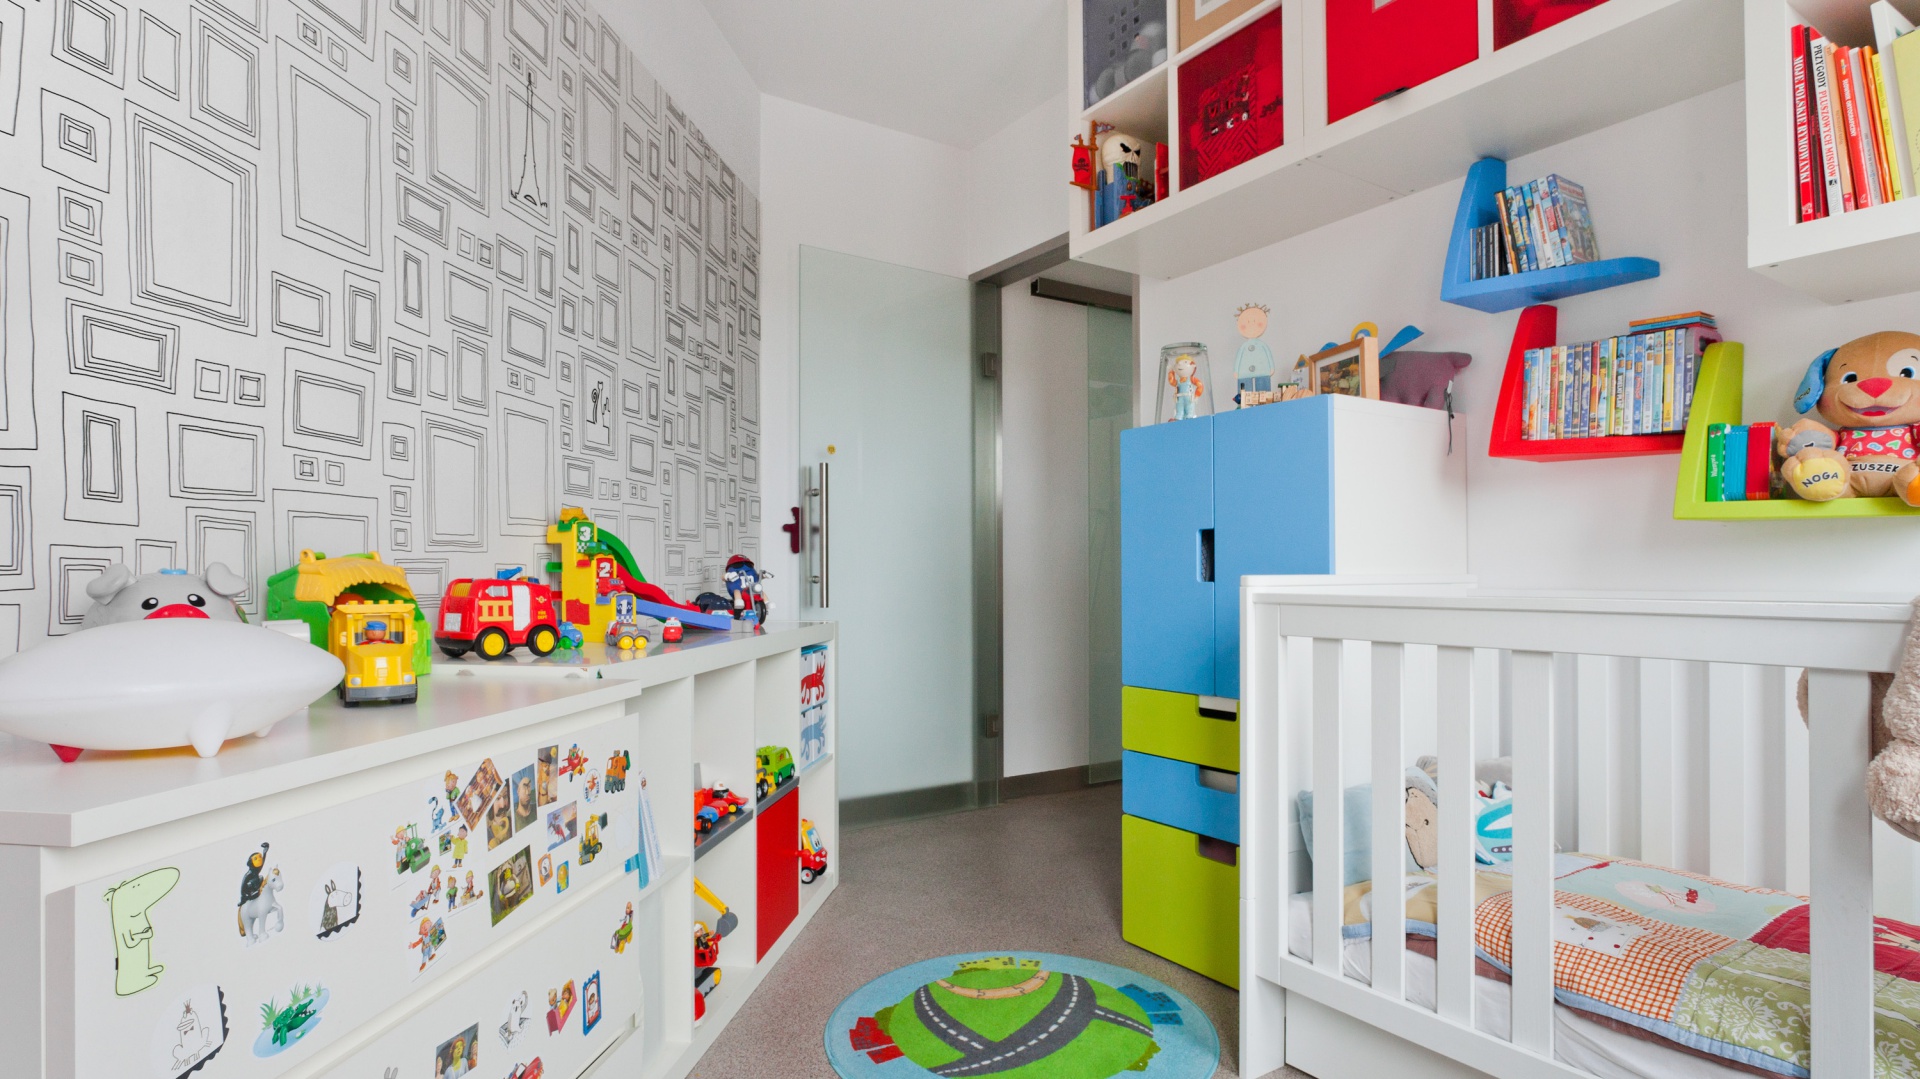 Pokój dziecka jest niewielki, ale dzięki jasnym ścianom i świeżym, energetycznym kolorom wydaje się być dużo większy, niż w rzeczywistości. Za realizację odpowiada Kasia Orwat z pracowni projektowej Home Design. Fot. Archiconnect.pl 